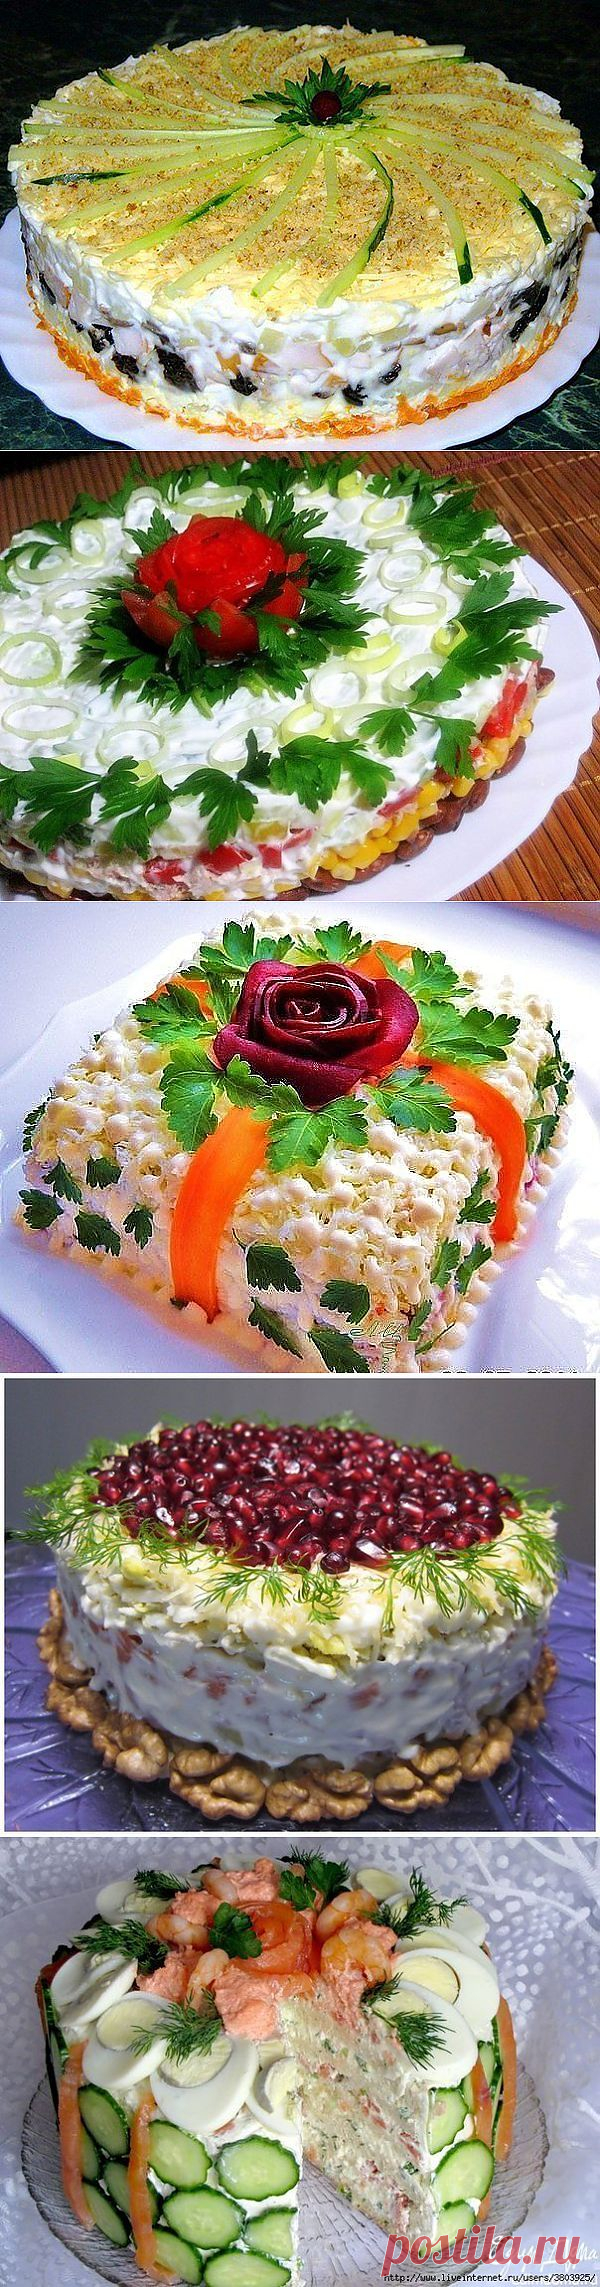 Блоги@Mail.Ru: Подборка лучших рецептов салатов-тортов